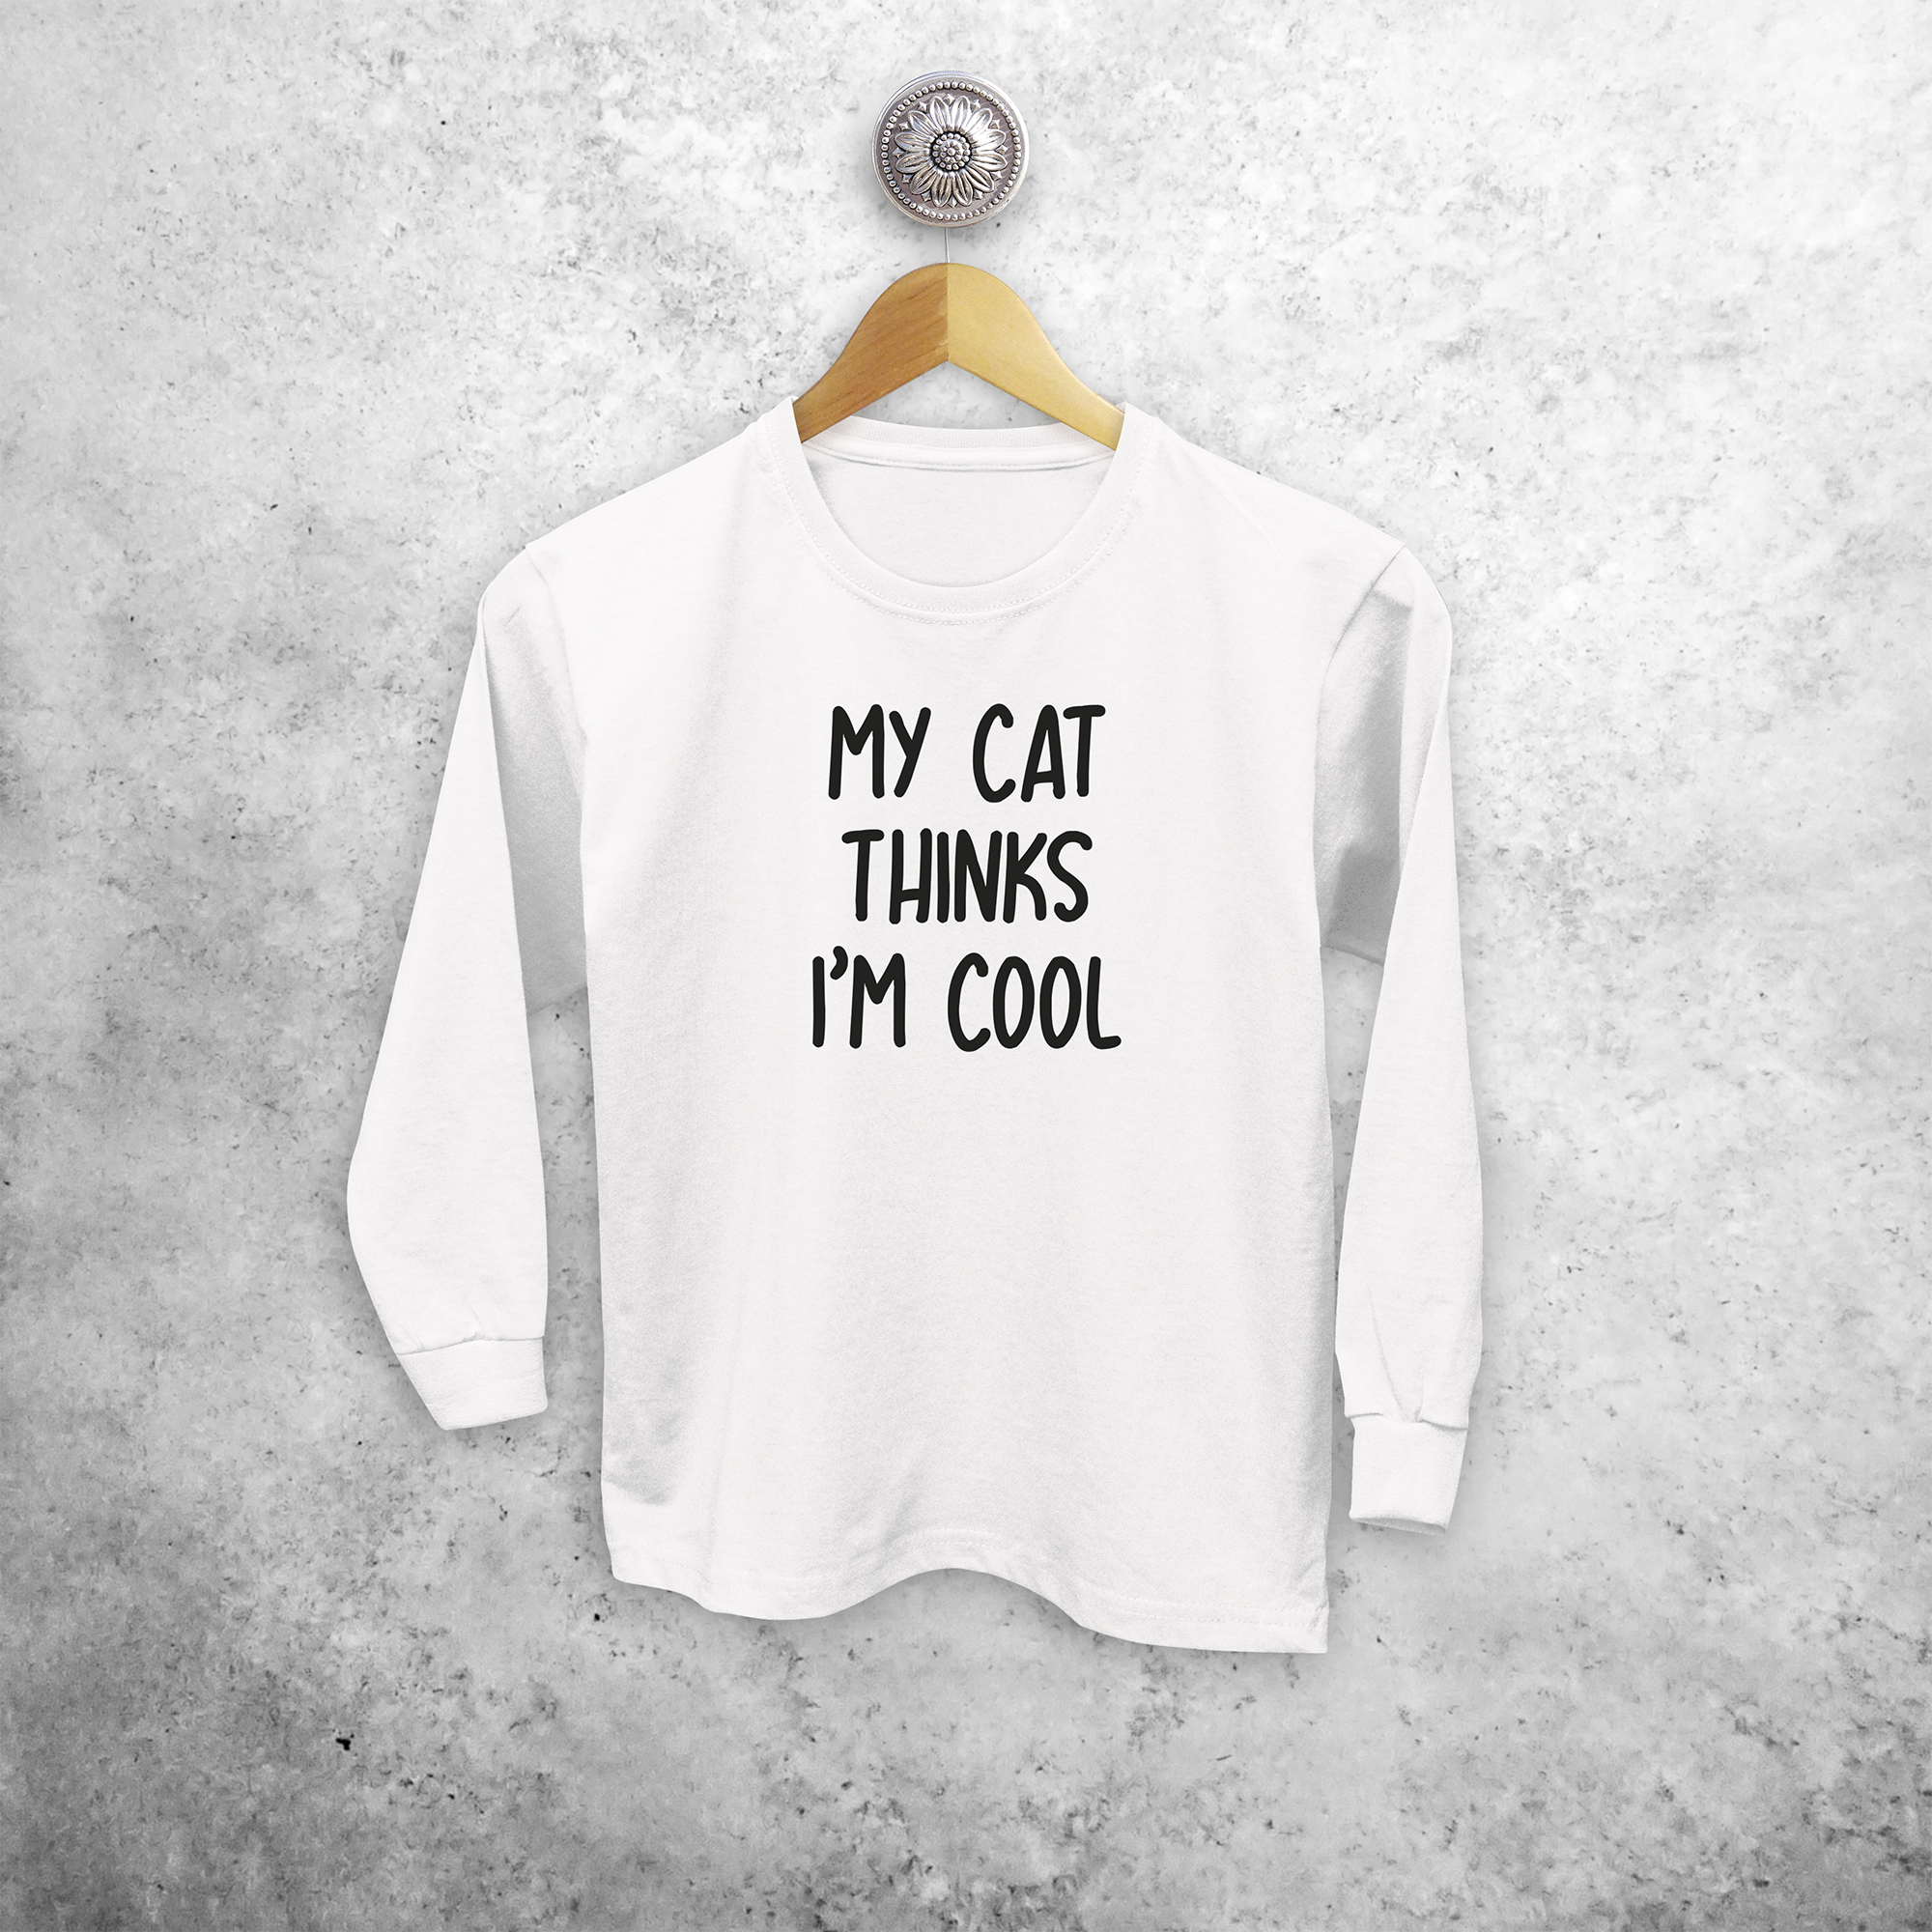 'My cat thinks I'm cool' kids longsleeve shirt